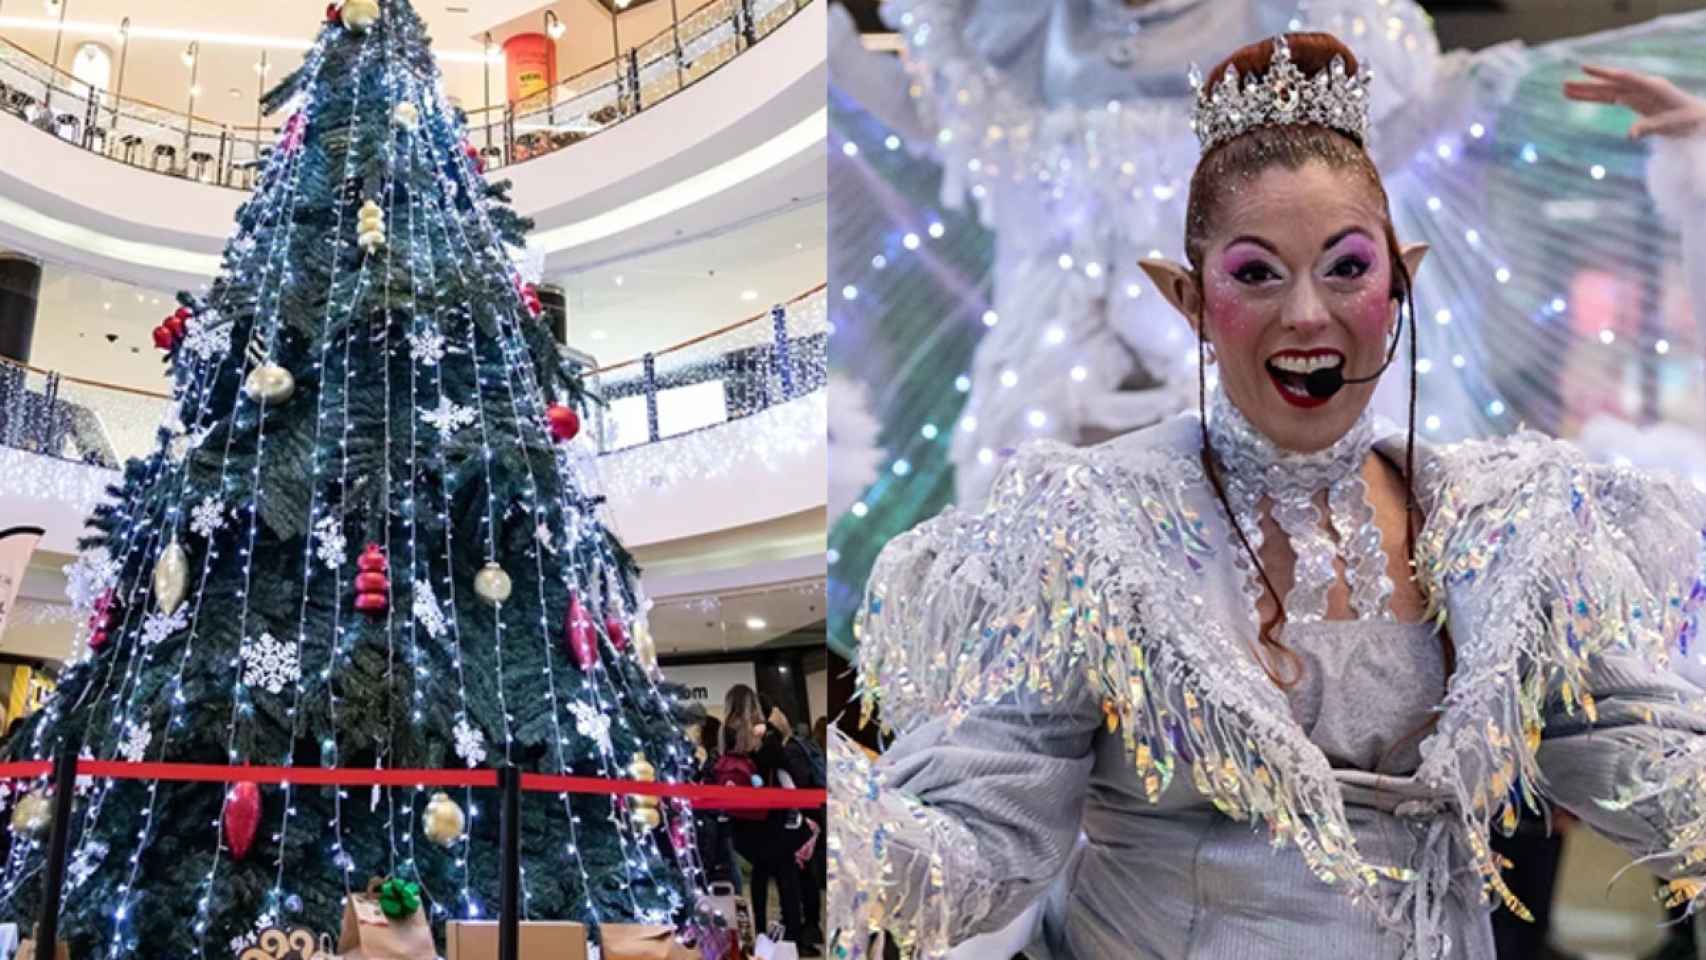 El centro comercial La Farga se convierte en una ‘fábrica de ilusiones’ por Navidad